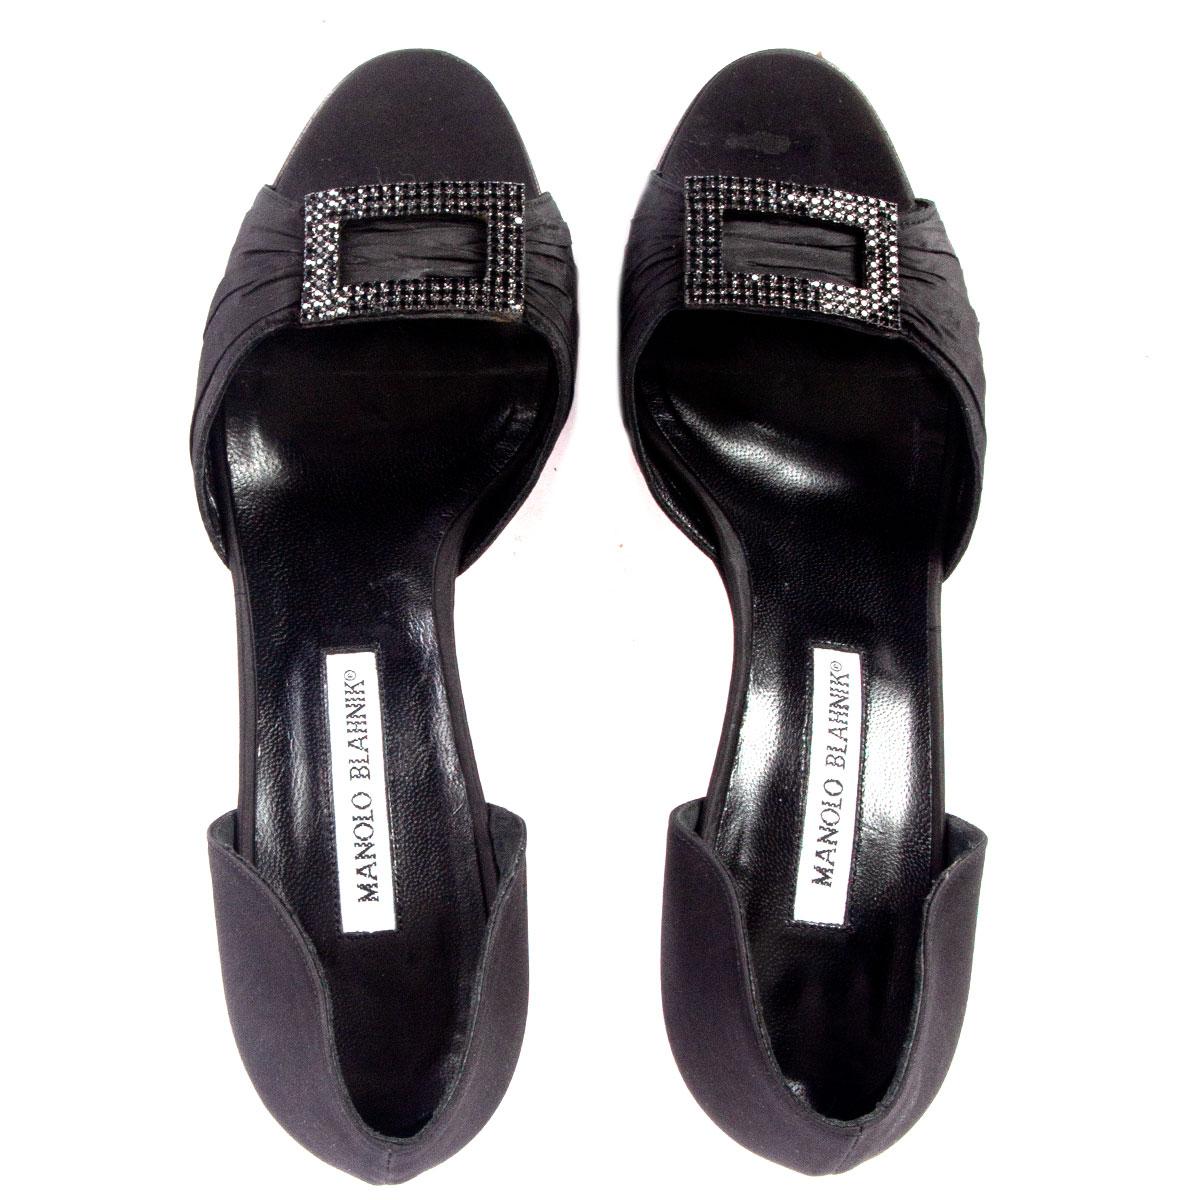 MANOLO BLAHNIK schwarze Seiden-Satin-Sandalen mit KRISTALLVERZIERUNG, Schuhe 38 Damen im Angebot